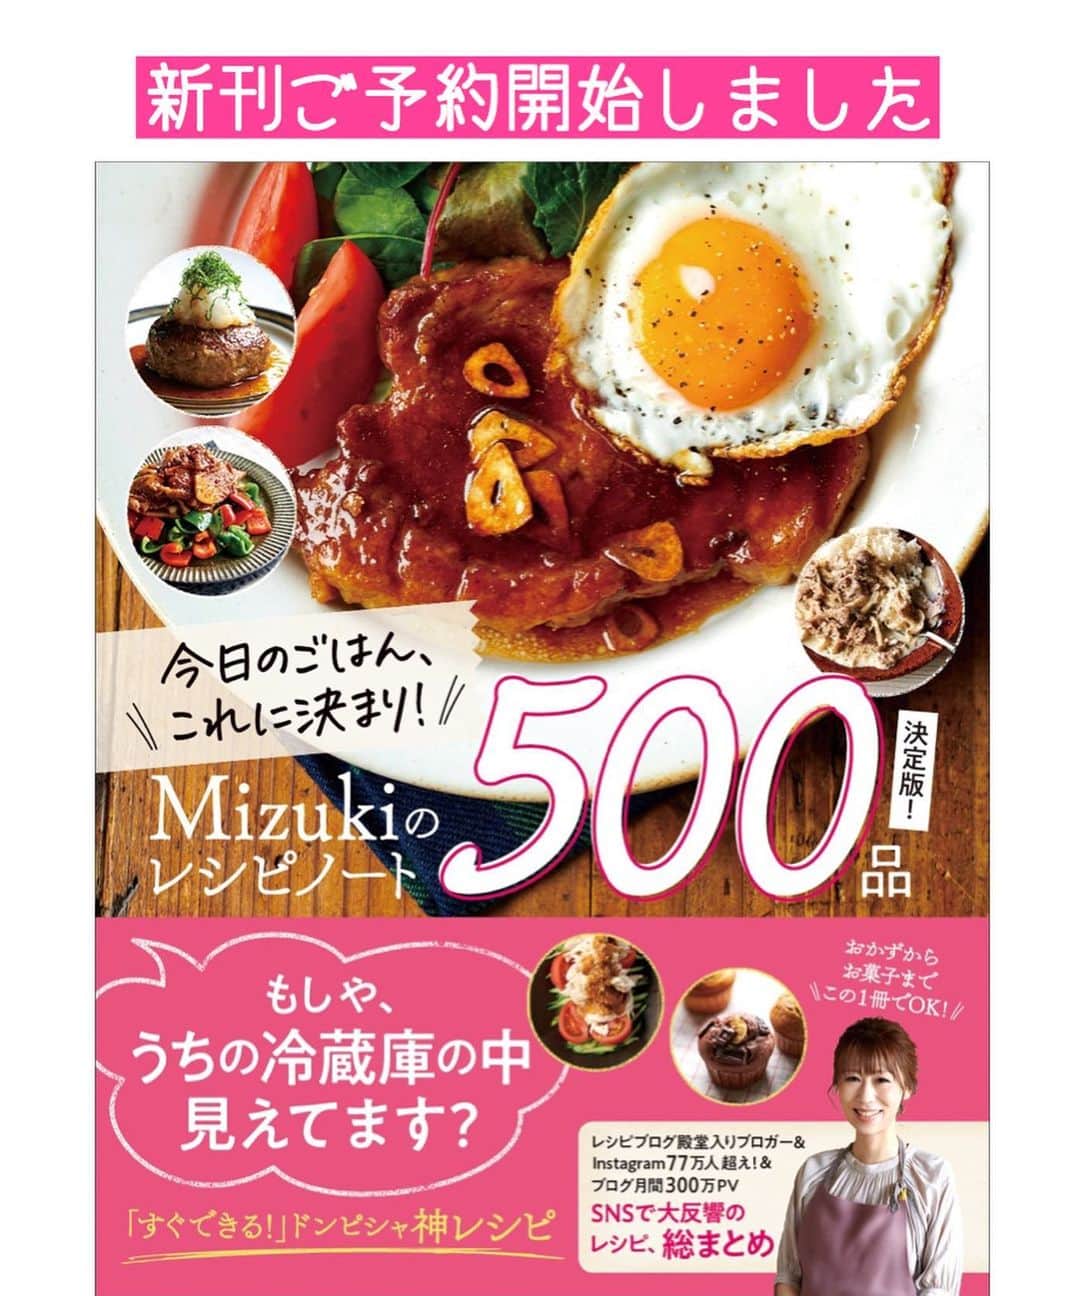 Mizuki【料理ブロガー・簡単レシピ】さんのインスタグラム写真 - (Mizuki【料理ブロガー・簡単レシピ】Instagram)「・ 【#レシピ 】ーーーーーーー \ 野菜高騰に負けない / レンジで6分！担々もやし ーーーーーーーーーーーーー ⁡ ⁡ ⁡ おはようございます(*^^*) ⁡ 今日ご紹介させていただくのは \ レンジで6分！担々もやし / ⁡ お助け食材''もやし''が主役の 野菜高騰に負けないおかず♩ しかも全部一気にチンするだけの 超簡単レシピです(*´艸`) ⁡ ごま風味の甘辛味で ごはんもお酒もすすみますよ〜♡ 野菜がたっぷり食べられるので よかったらお試し下さいね(*^^*) ⁡ ⁡ ⁡ ＿＿＿＿＿＿＿＿＿＿＿＿＿＿＿＿＿＿＿＿＿ 【2人分】 豚ひき肉...150g ●味噌・酒・すりごま...各大1.5 ●砂糖...小2 ●豆板醤・片栗粉...各小1/2 ●にんにくチューブ...1cm もやし...1袋(200g) ニラ...1/2束 人参...1/4本 白ごま...適量 ⁡ 1.ひき肉に●を加えて菜箸で混ぜる。ニラは4cm長さに切る。人参は細切りにする。 2.大きめの耐熱皿に、もやし→人参→ひき肉→ニラの順に重ねて入れる。ふんわりラップをかけ、600Wのレンジで6分加熱する。 3.よく混ぜて器に盛り、ごまを振る。 ￣￣￣￣￣￣￣￣￣￣￣￣￣￣￣￣￣￣￣￣￣ ⁡ ⁡ ⁡ 《ポイント》 ♦︎ひき肉は全体に広げるようにしてのせて下さい♩ ♦︎加熱時間は目安です☆もしも火が通っていなければ追加加熱して下さい♩ ♦︎豆板醤なしで作り、大人は仕上げにラー油をかけても◎ ⁡ ⁡ ⁡ ⁡ ⁡ ⁡ ⁡ ⁡ \ 新刊予約開始しました /(9月24日発売) 🔹🔹🔹🔹🔹🔹🔹🔹🔹🔹🔹🔹 今日のごはんこれに決まり！ #Mizukiのレシピノート 決定版 500品 🔹🔹🔹🔹🔹🔹🔹🔹🔹🔹🔹🔹 ⁡ 総レシピ6000点の中からレシピを厳選！ まさかの【500レシピ掲載】しました⭐️ (もはや辞典...) ⁡ 肉や魚のメインおかずはもちろん 副菜、丼、麺、スープ、お菓子 ハレの日のレシピ、鍋のレシピまで 全てこの一冊で完結！！ ⁡ ⁡ 🎁新刊予約でエプロンが当たる🎁 プレゼントキャンペーン実施中 ￣￣￣￣￣￣￣￣￣￣￣￣￣￣￣￣￣￣￣￣￣ 【応募方法】 ❶1枚目に表紙画像 2枚目にAmazonで予約したことがわかる画像 (どちらもスクショでOK)を貼りつける。 ❷ハッシュタグ【#Mizukiのレシピノート 】 をつけて投稿！ ￣￣￣￣￣￣￣￣￣￣￣￣￣￣￣￣￣￣￣￣￣￣ ⁡ ⁡ ⁡ ⁡ ⁡ ＿＿＿＿＿＿＿＿＿＿＿＿＿＿＿＿ 🟥YouTube 料理動画配信中🟥 ￣￣￣￣￣￣￣￣￣￣￣￣￣￣￣￣ 料理とお菓子の簡単レシピを ご紹介しています☺️💓 ⁡ 【奇跡のキッチン】で検索🔍 (ハイライトからも飛べます✨) ￣￣￣￣￣￣￣￣￣￣￣￣￣￣￣￣ ⁡ ⁡ ⁡ ＿＿＿＿＿＿＿＿＿＿＿＿＿＿＿＿ 🔶🔶recipe book🔶🔶 ￣￣￣￣￣￣￣￣￣￣￣￣￣￣￣￣ ホケミレシピの決定版♩ \はじめてでも失敗しない/ 📙#ホットケーキミックスのお菓子 ⁡ NHKまる得マガジンテキスト☆ #ホットケーキミックス で ⁡ 📗絶品おやつ&意外なランチ ⁡ しんどくない献立、考えました♩ \𝟣𝟧分でいただきます/ 📕#Mizukiの2品献立 ⁡ 和食をもっとカジュアルに♩ \毎日のごはんがラクになる/ 📘#Mizukiの今どき和食  ＿＿＿＿＿＿＿＿＿＿＿＿＿＿＿＿＿ ⁡ ⁡ ⁡ ⁡ #担々もやしm #もやし #ひき肉 #レンジ #mizuki #簡単レシピ #時短レシピ #節約レシピ #料理 #料理初心者  #時短ごはん #節約ごはん #フーディーテーブル #おうちごはん #デリスタグラマー #おうちごはんlover #料理好きな人と繋がりたい #写真好きな人と繋がりたい #foodpick#cooking#recipe」8月30日 7時10分 - mizuki_31cafe